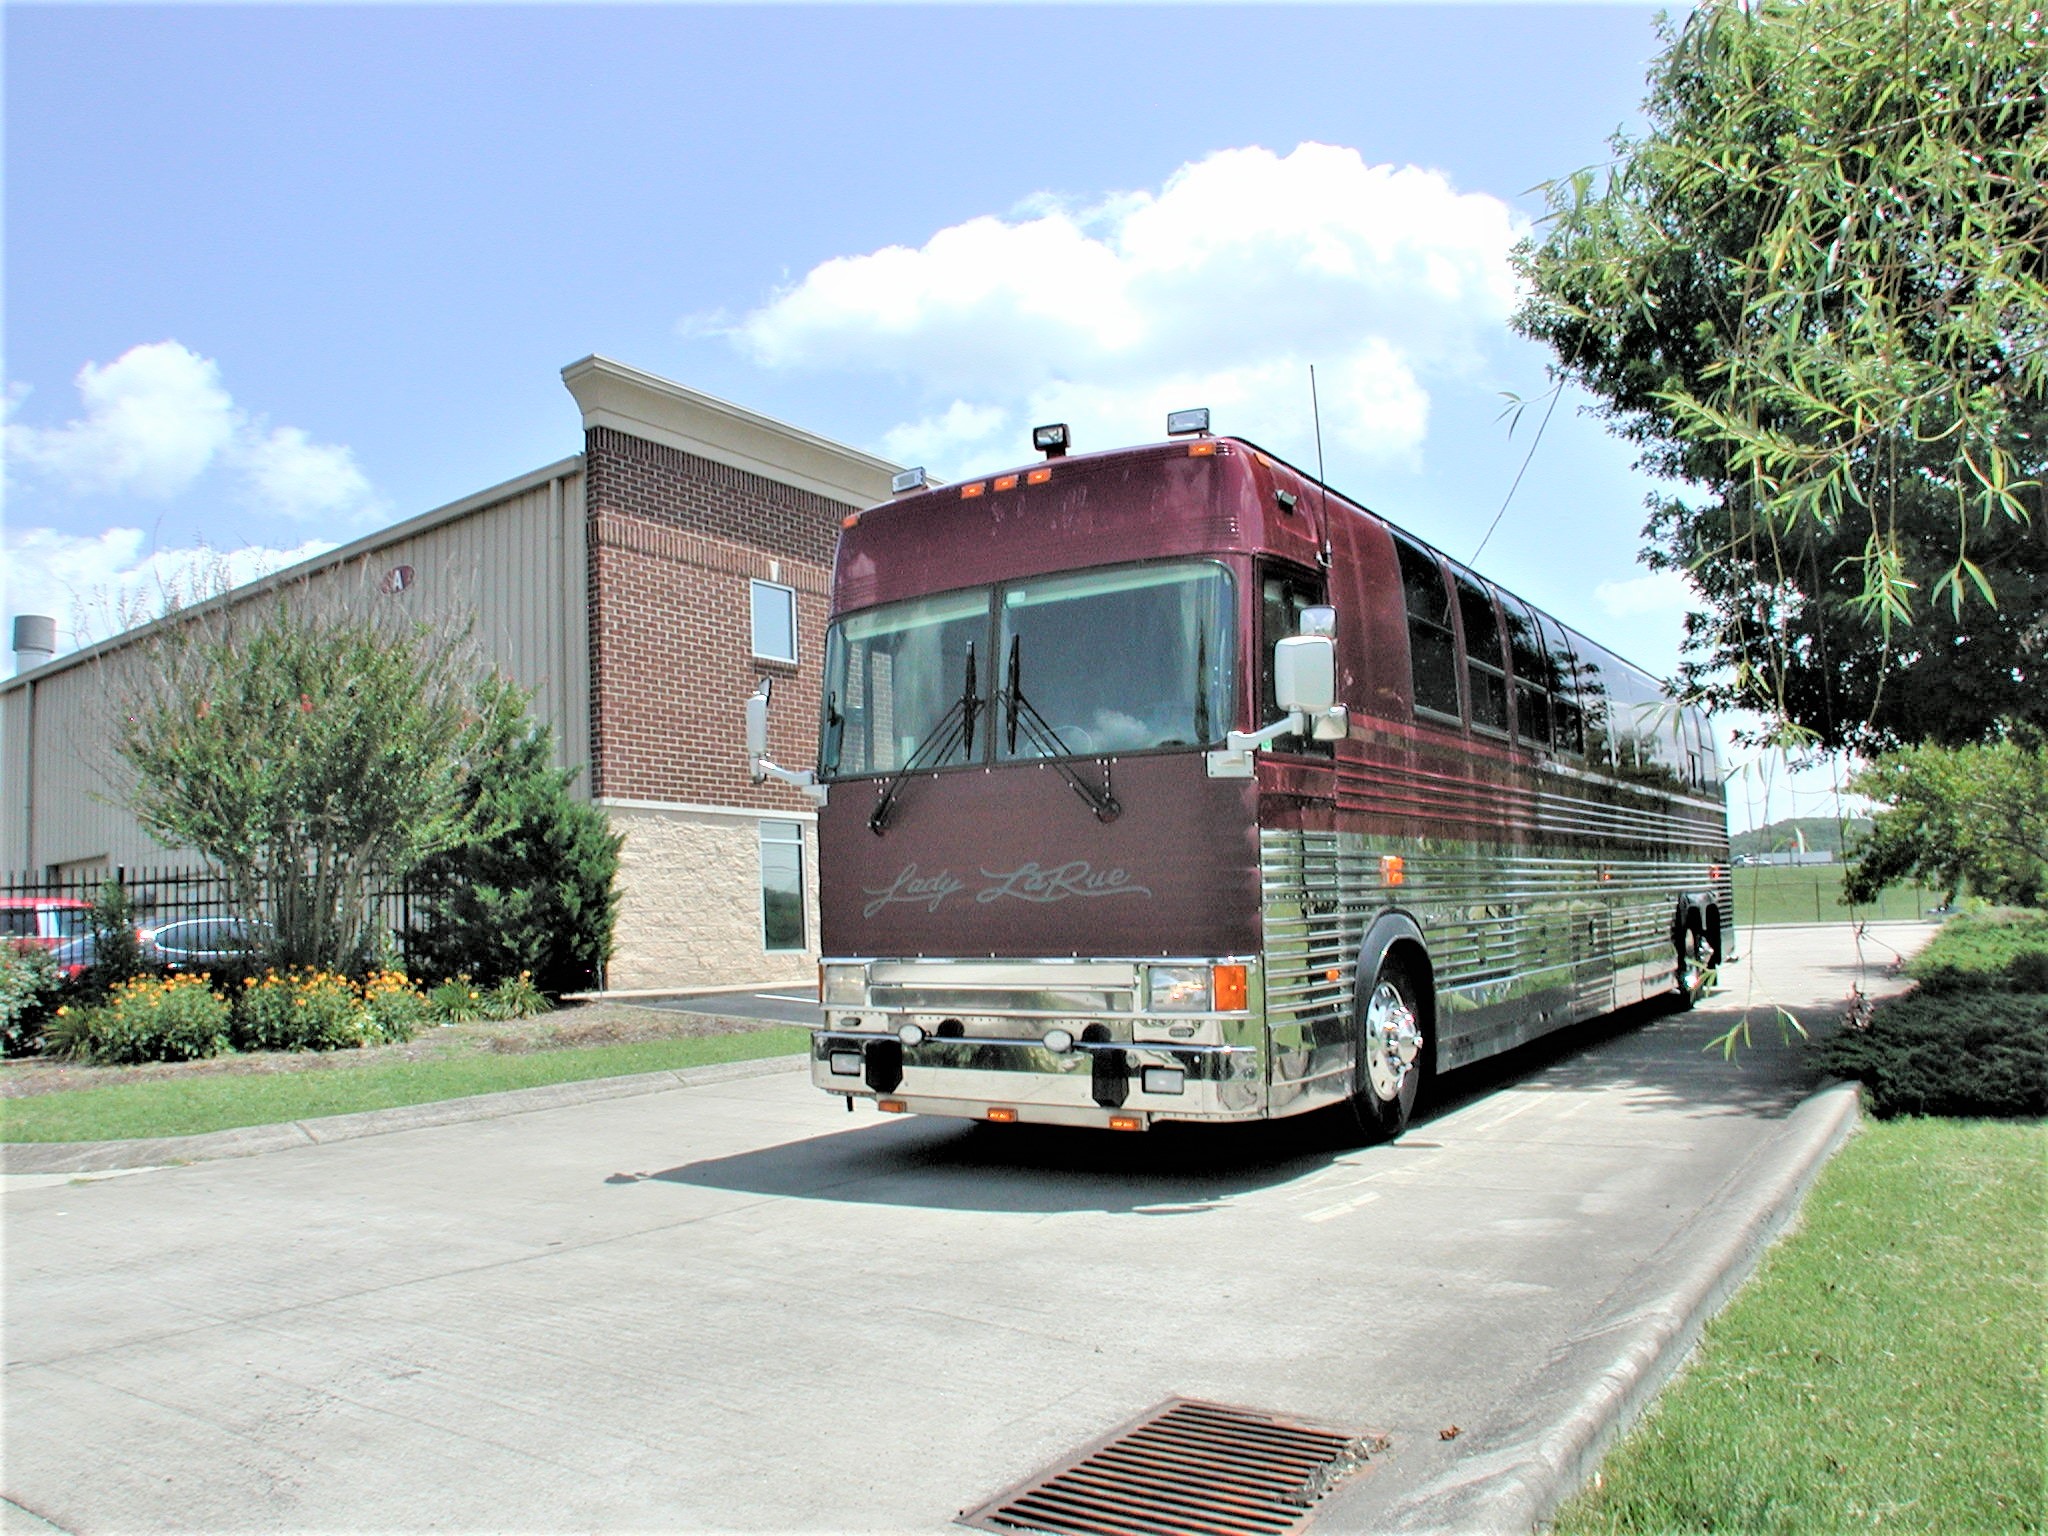 charlie daniels tour bus for sale